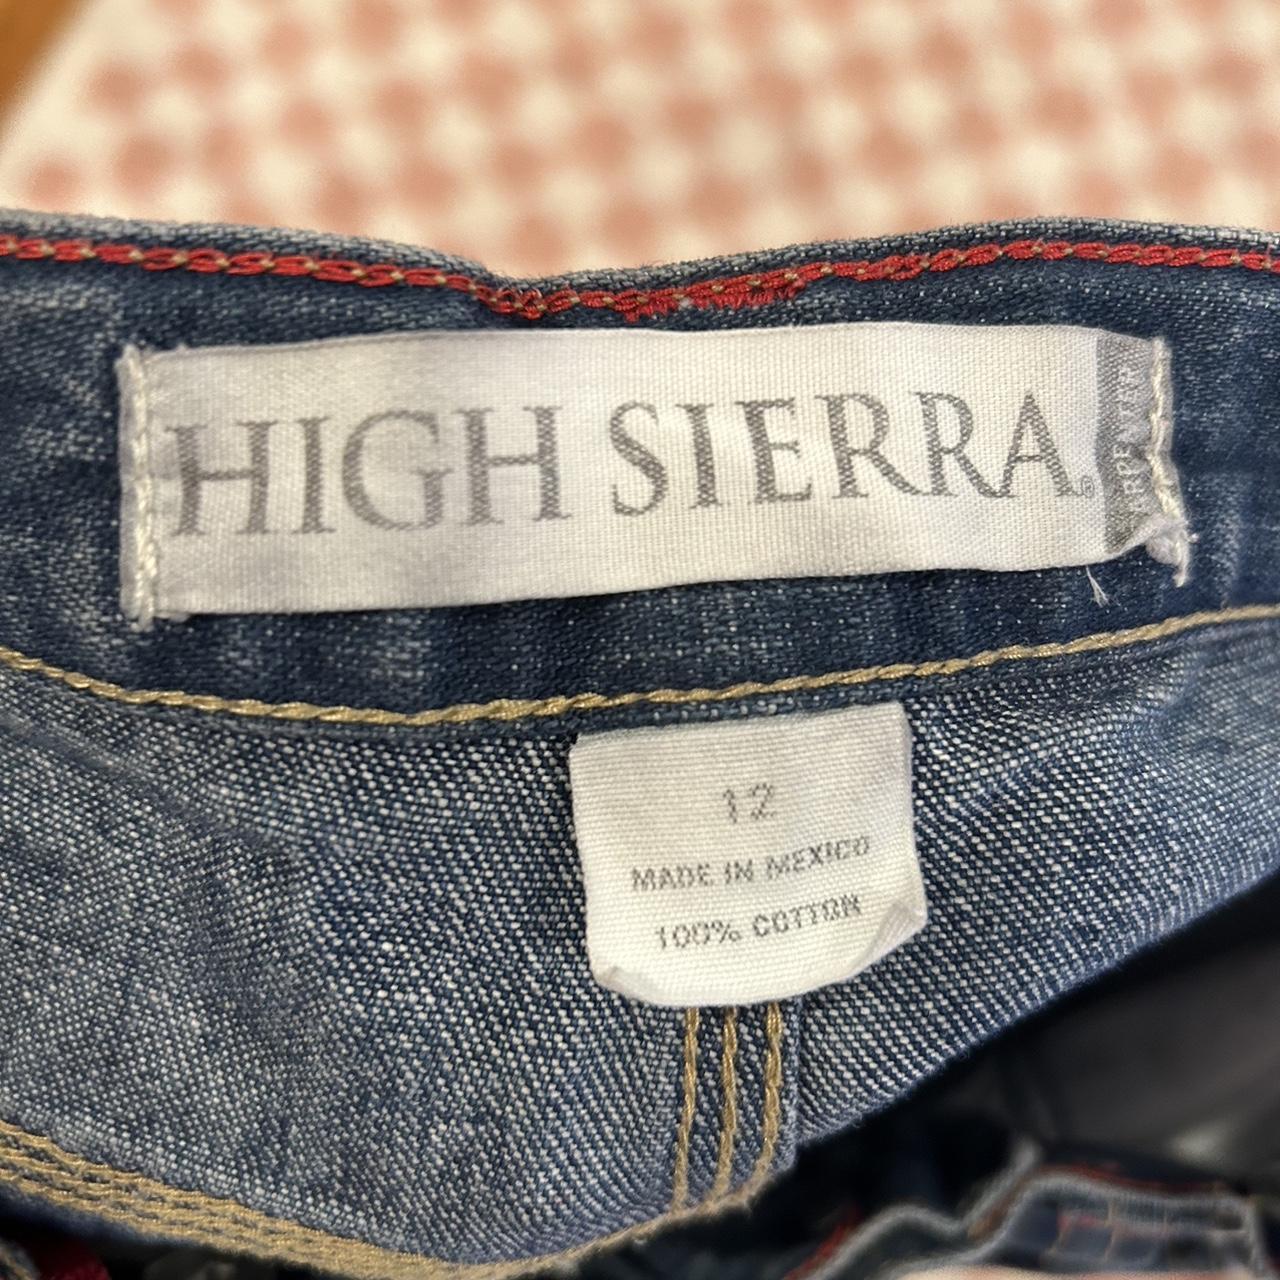 High Sierra Women's Shorts (3)